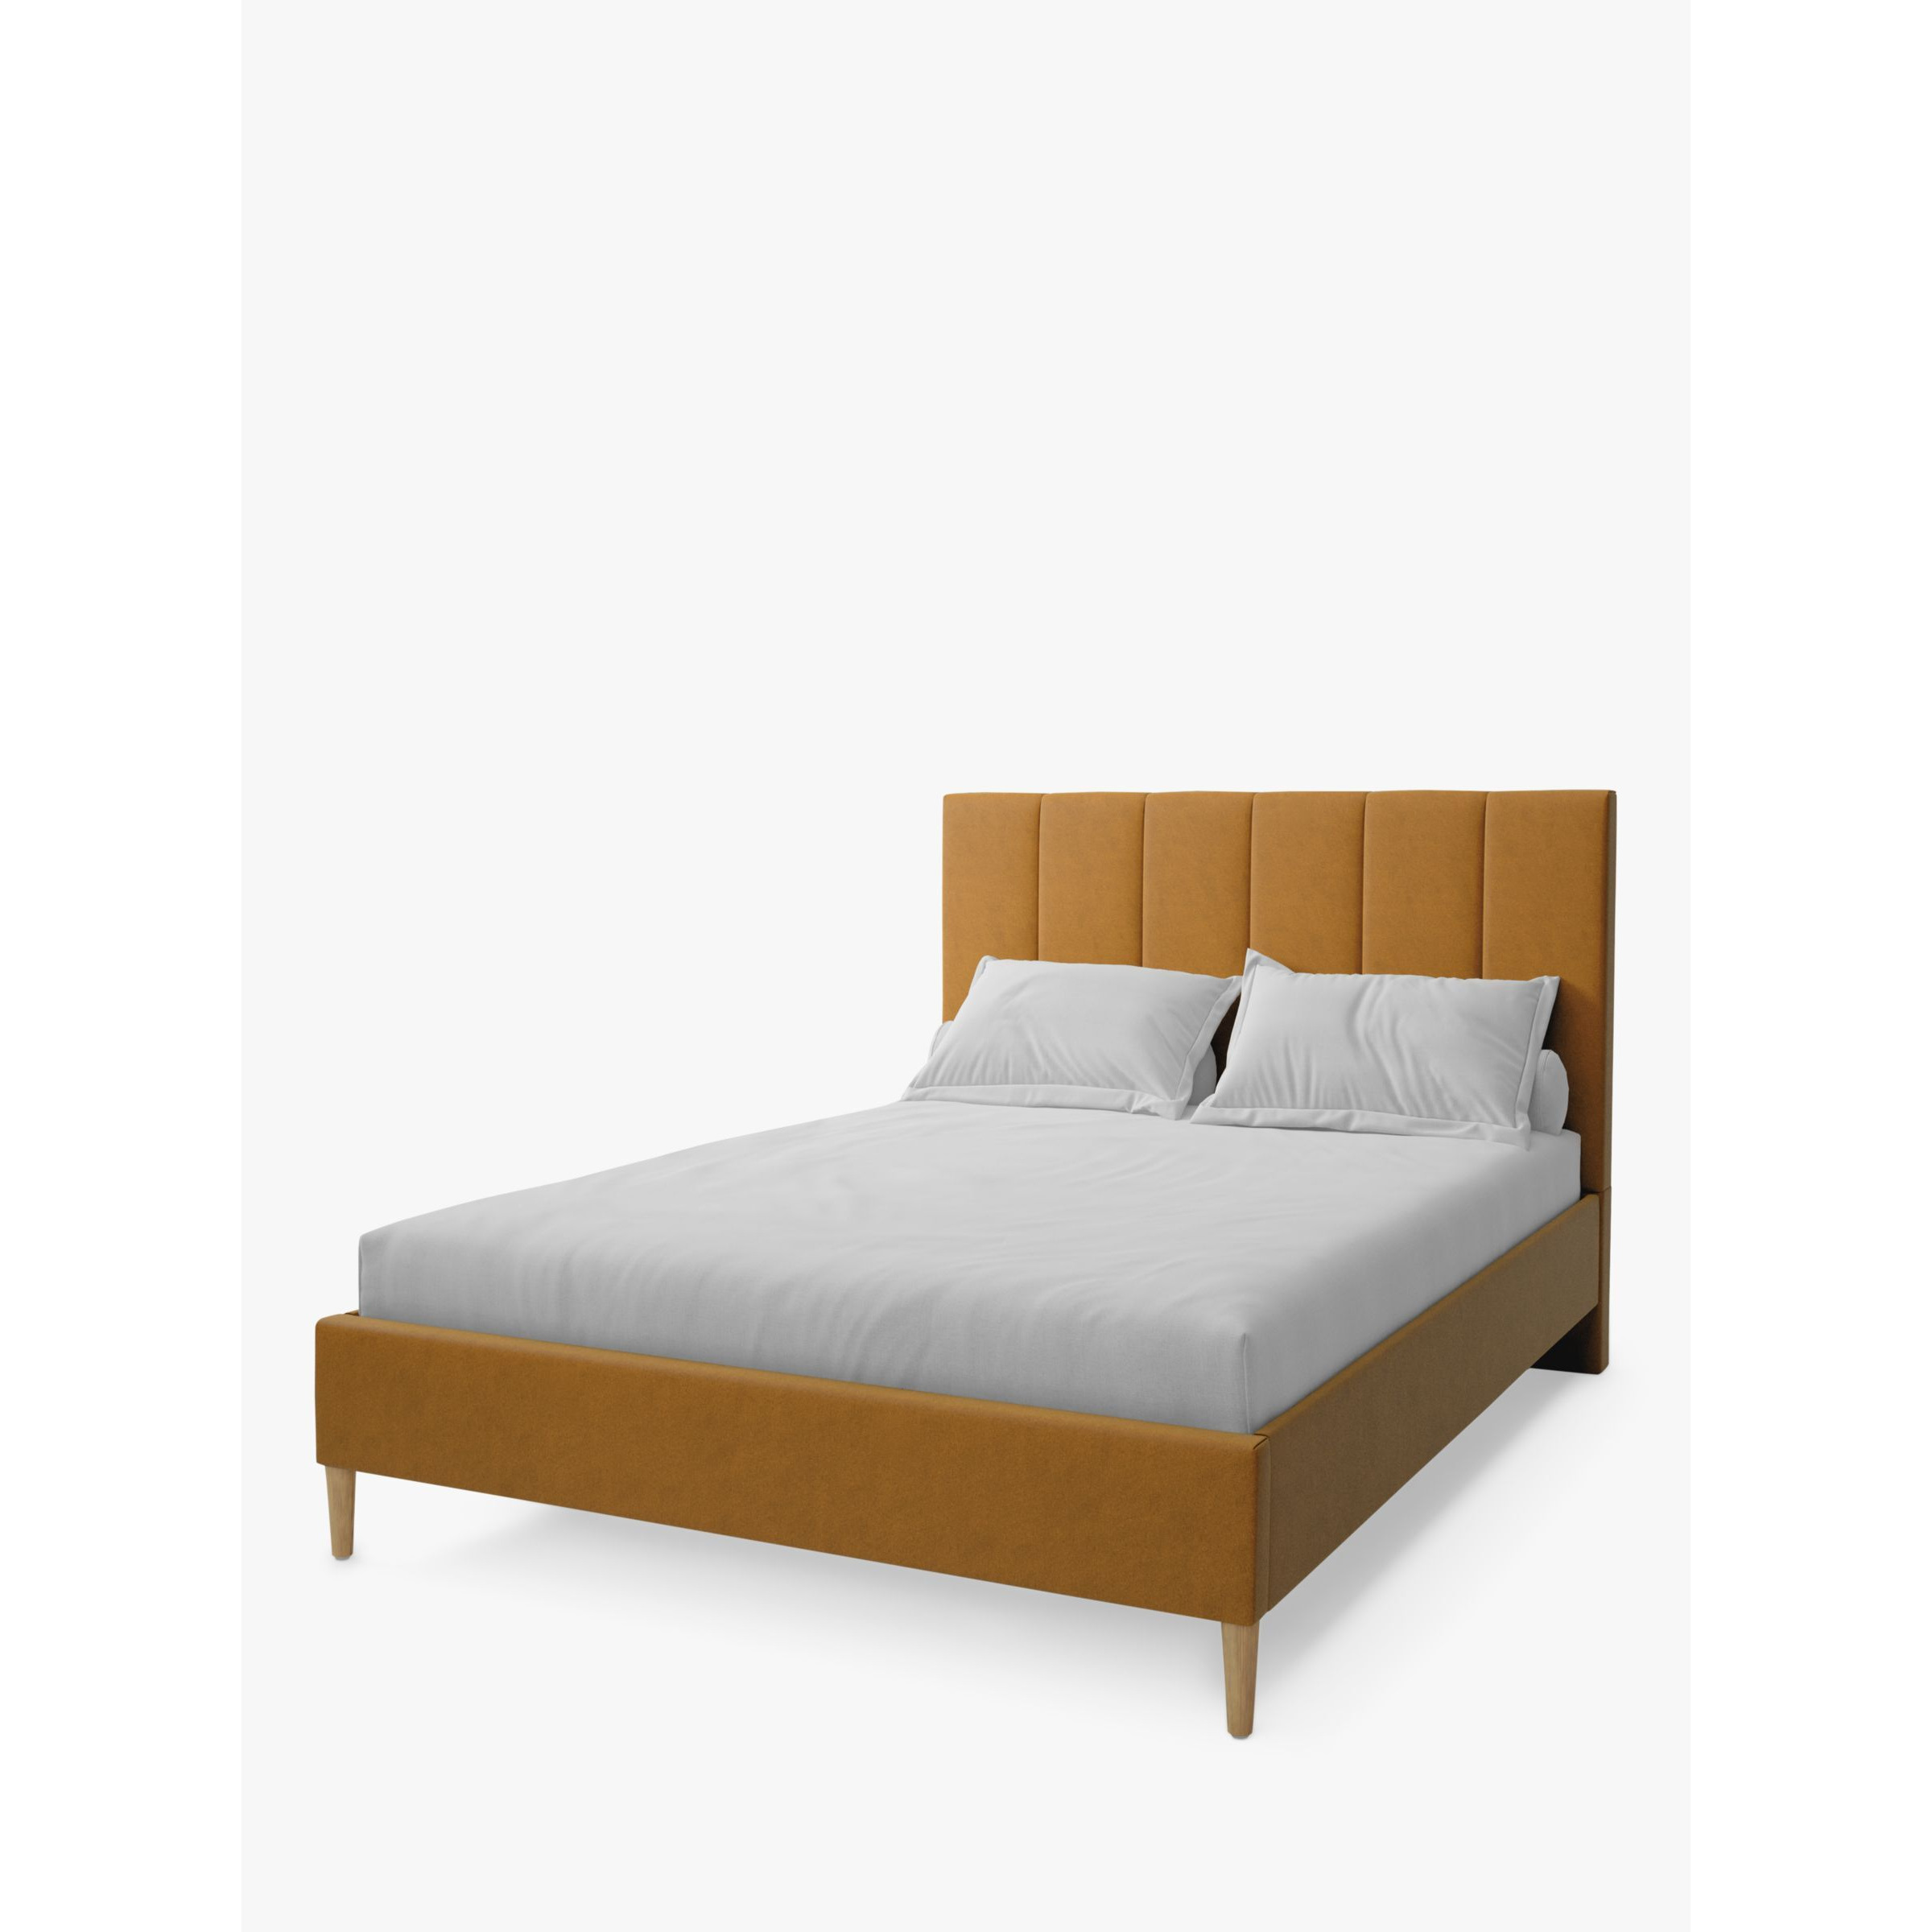 Koti Home Avon Upholstered Bed Frame, Double - image 1